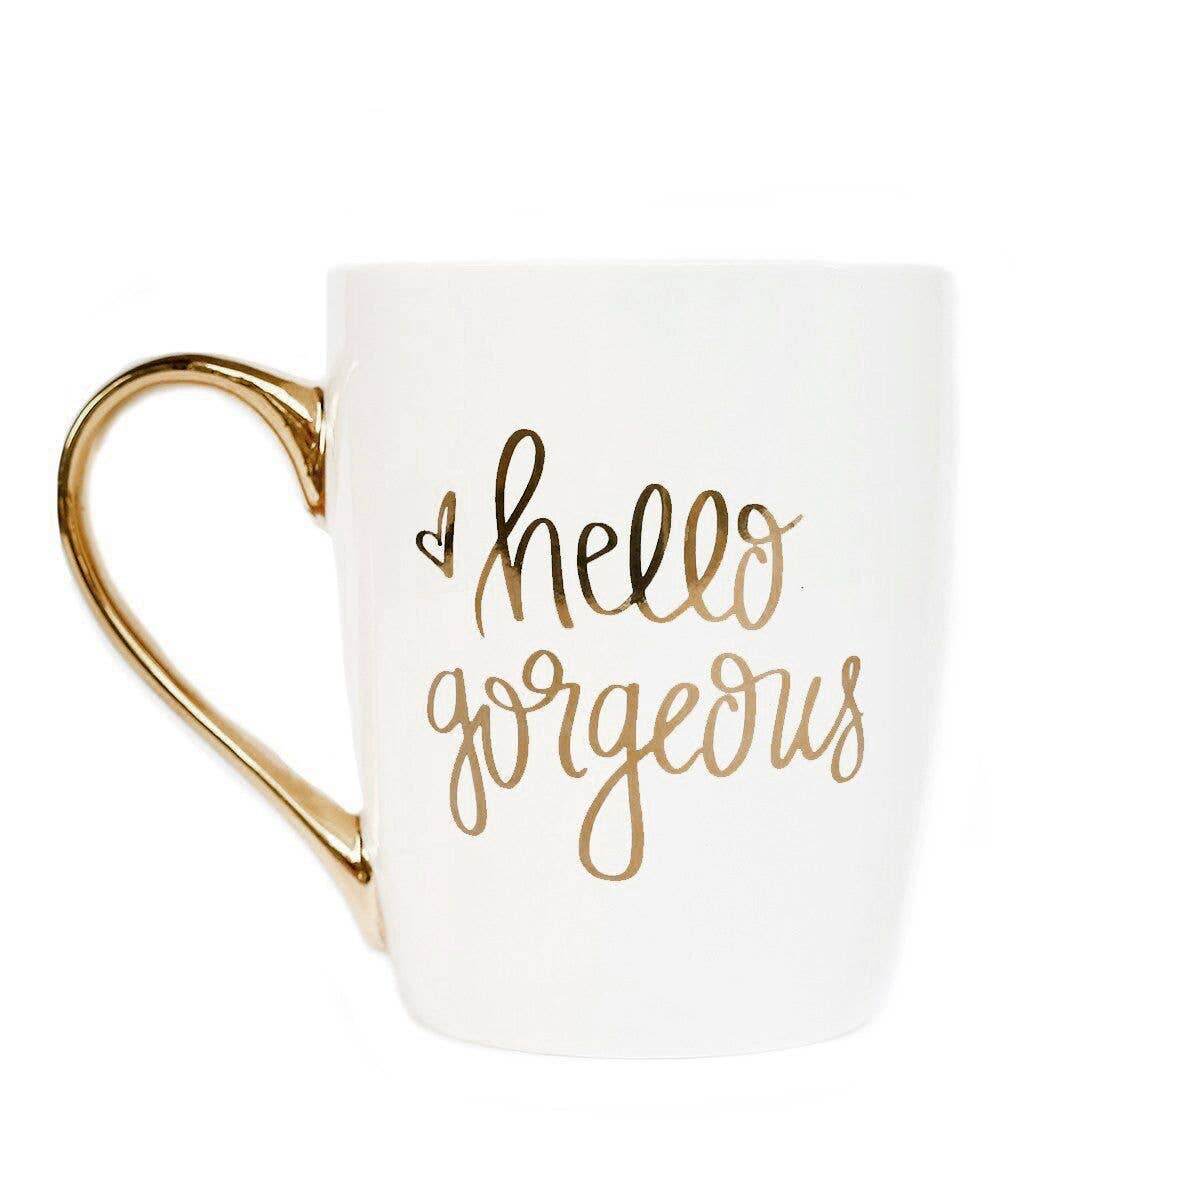 Hello Gorgeous - Gold and White Coffee Mug - 16 oz